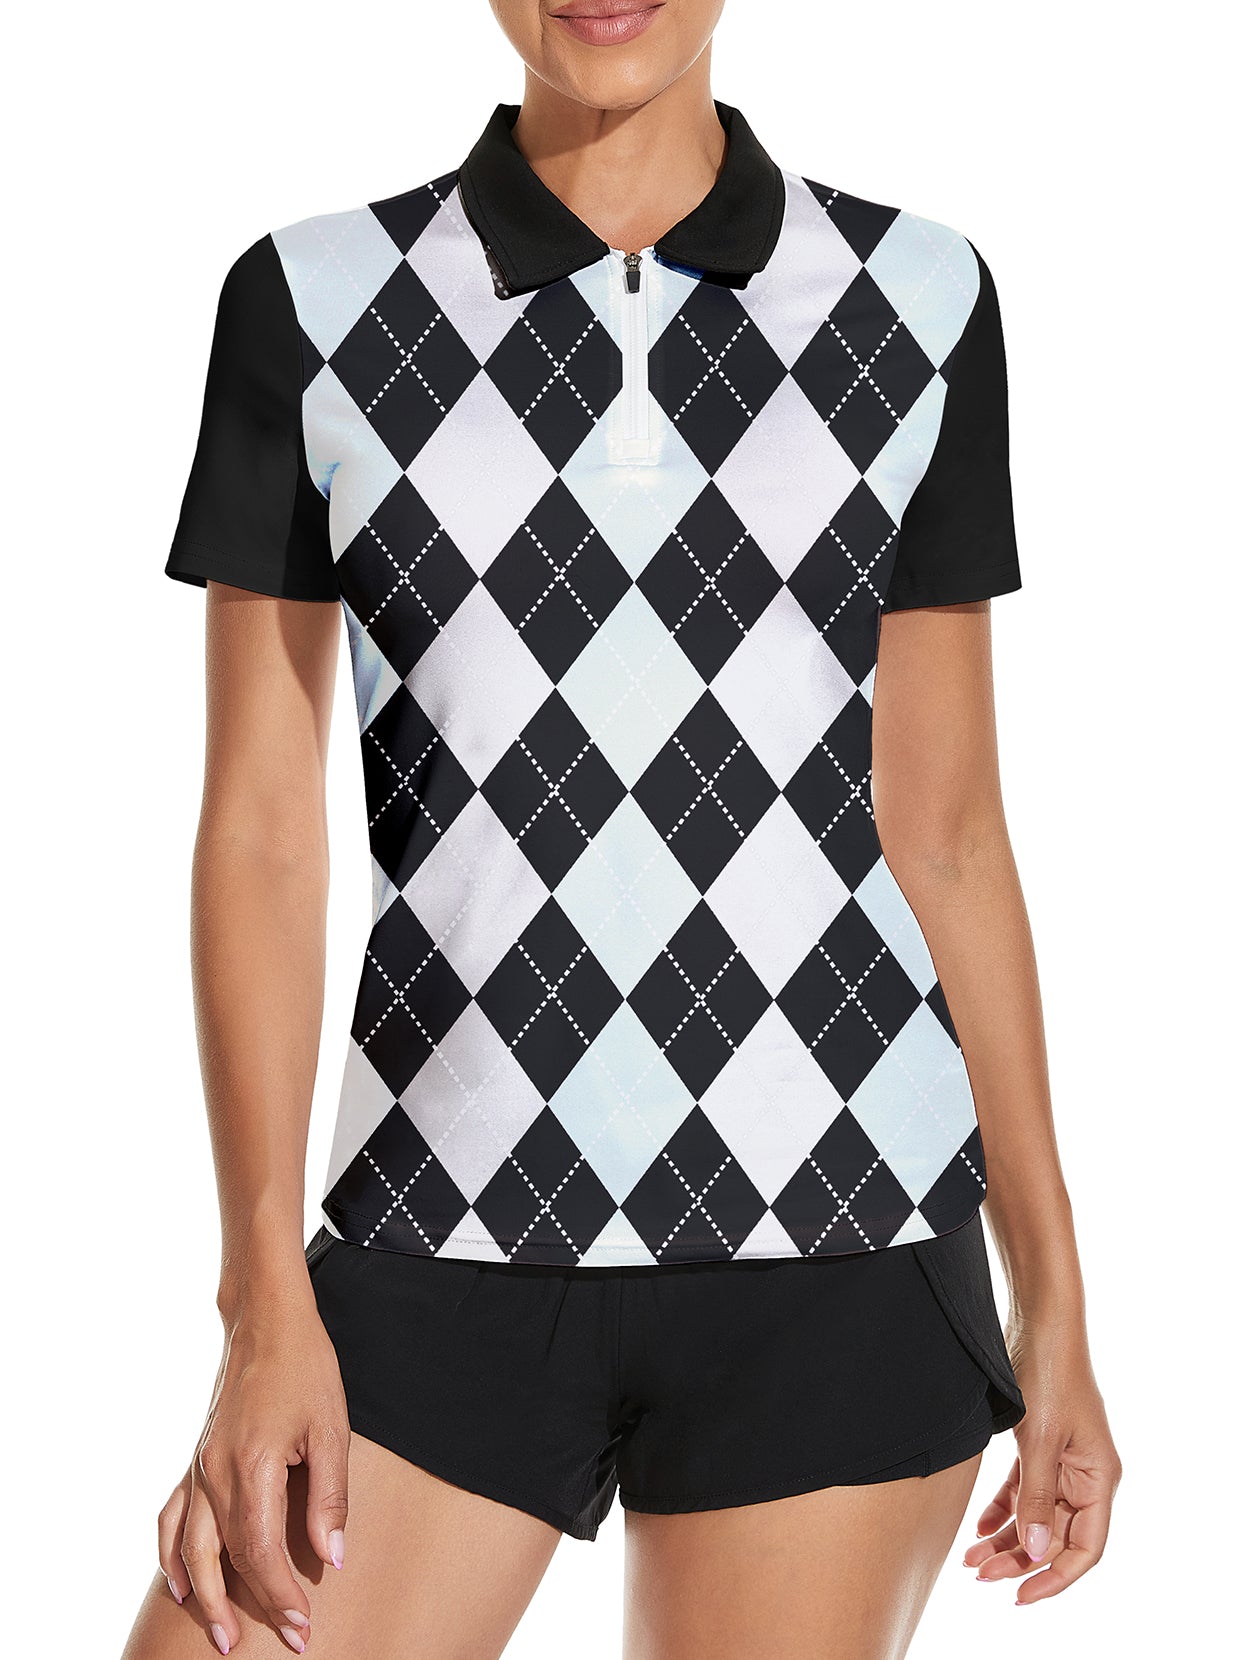 Women's Golf Polo Shirts Collarless UPF 50+ Tennis Running T-Shirt - Light  Blue / XS